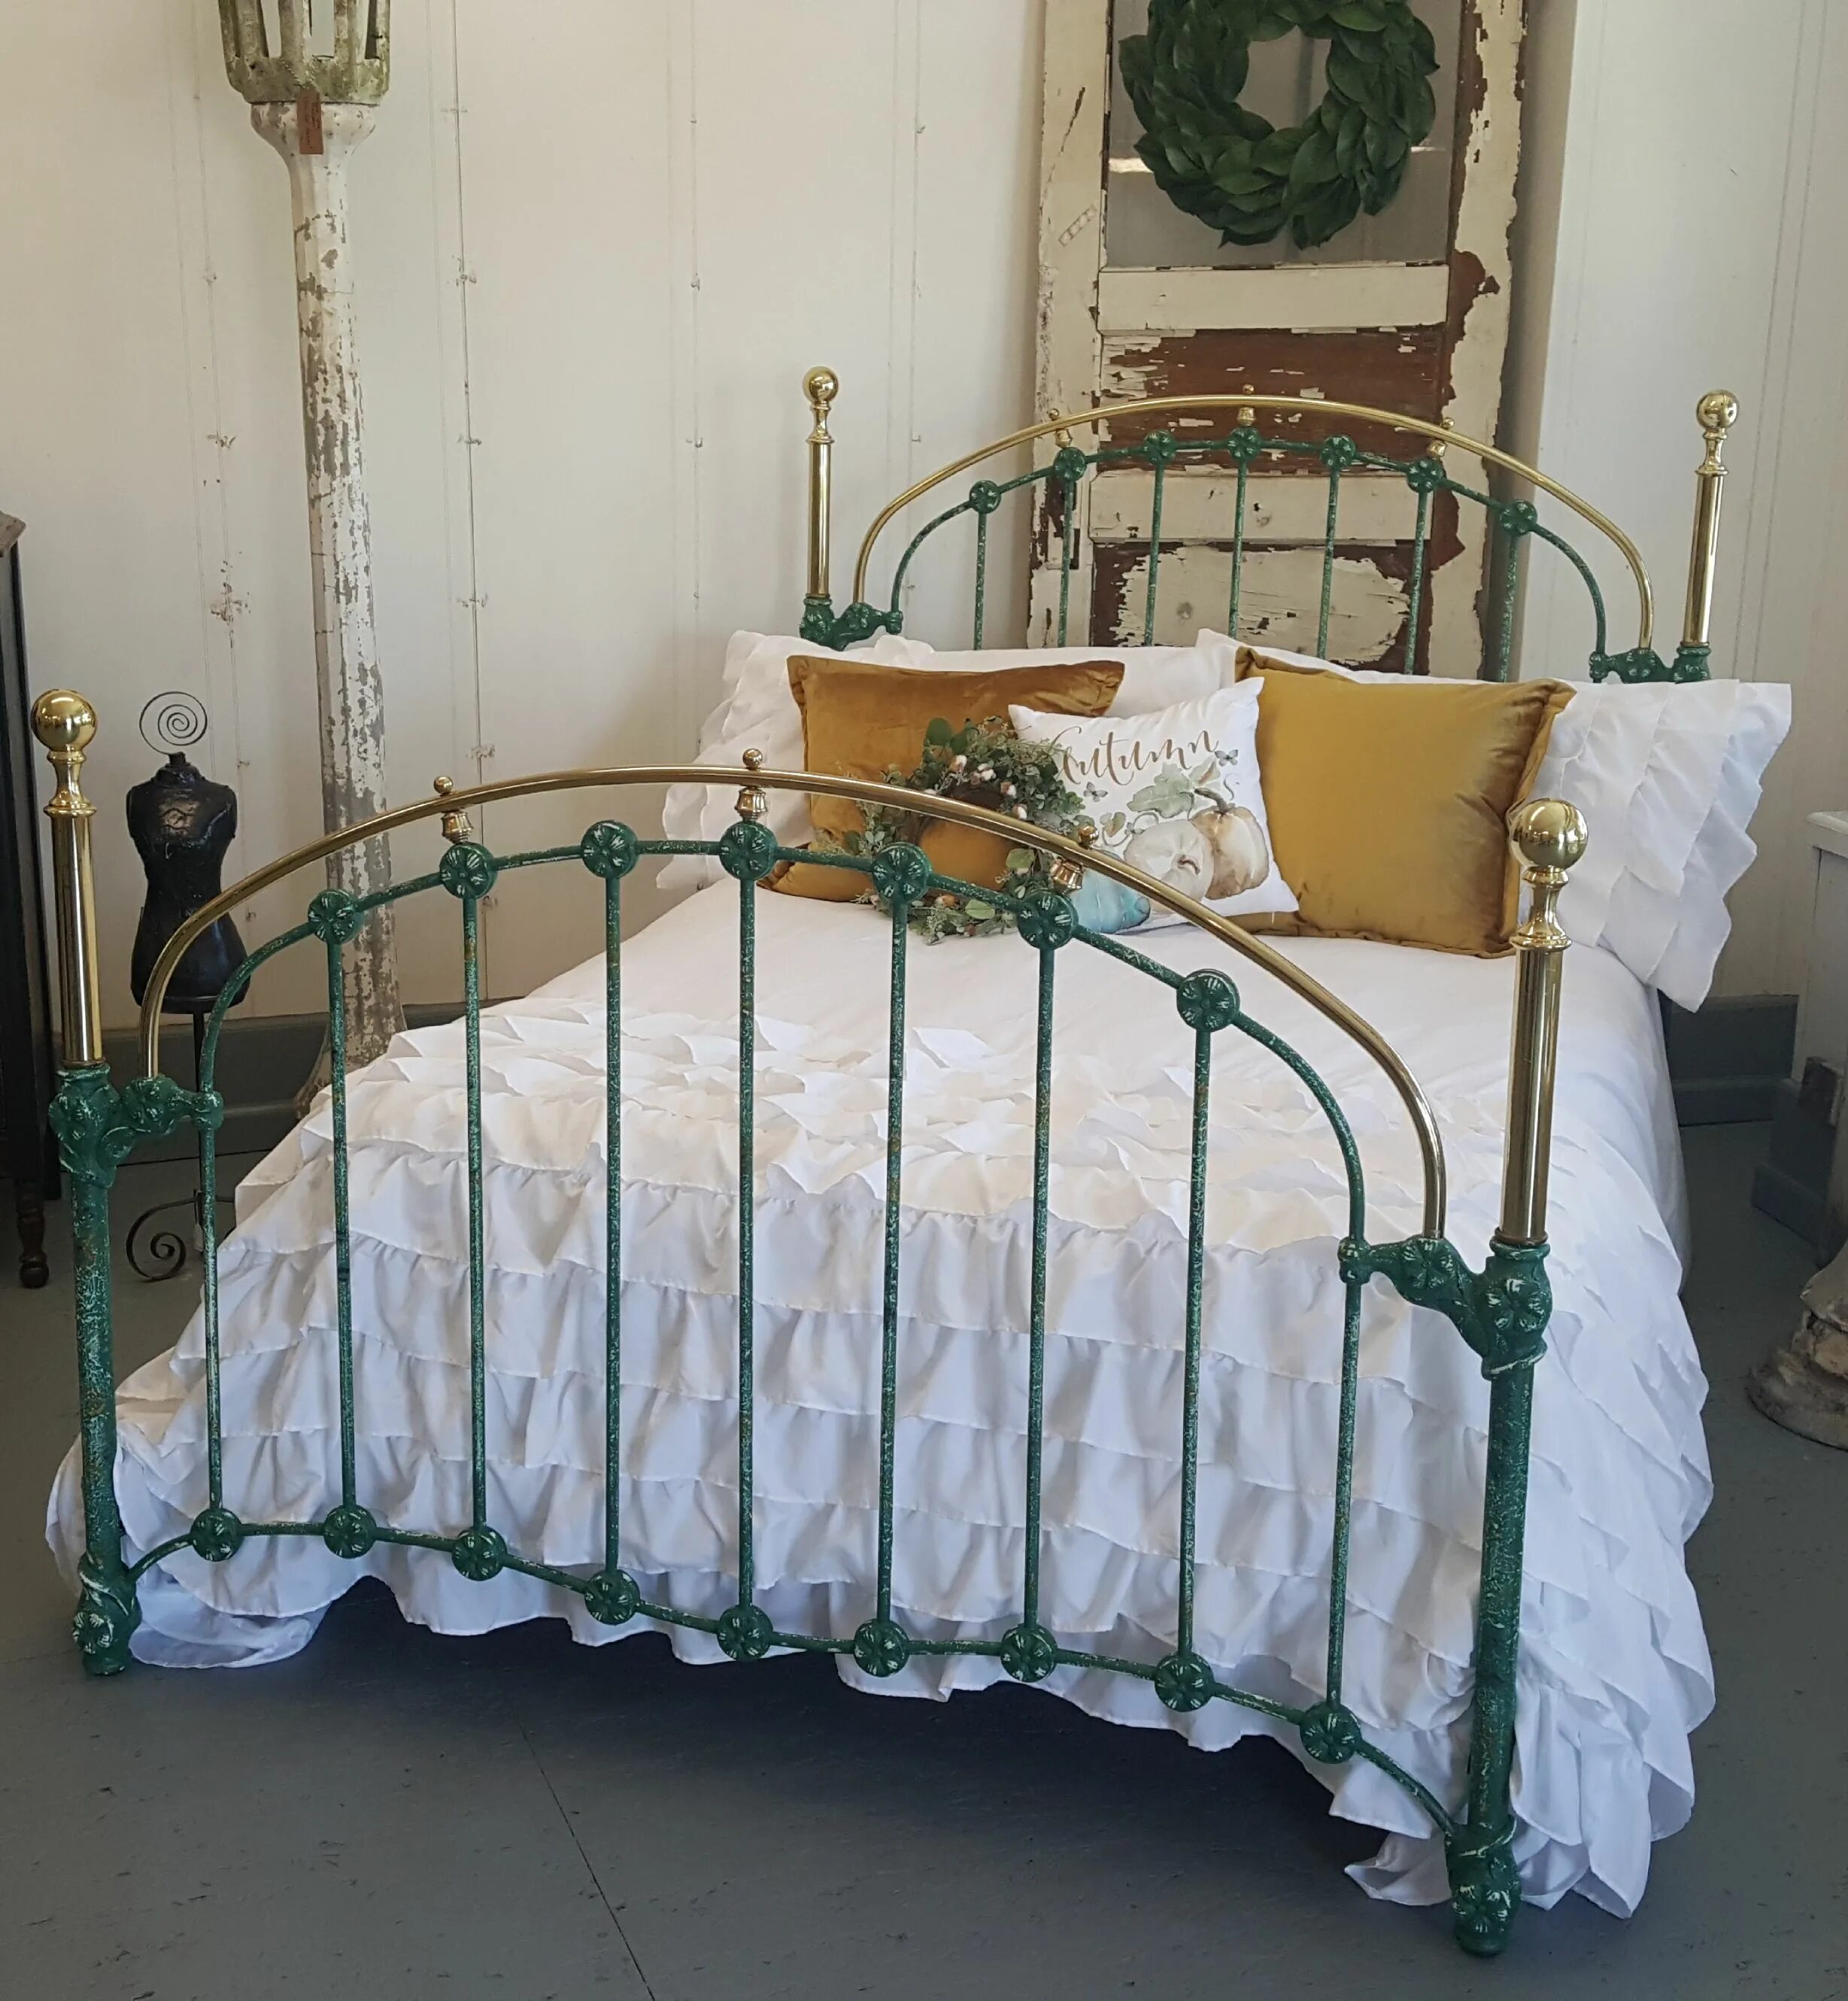 Куплю старые кровати. Старая металлическая кровать. Старинная железная кровать. Антикварная металлическая кровать. Статаря железная кровать.